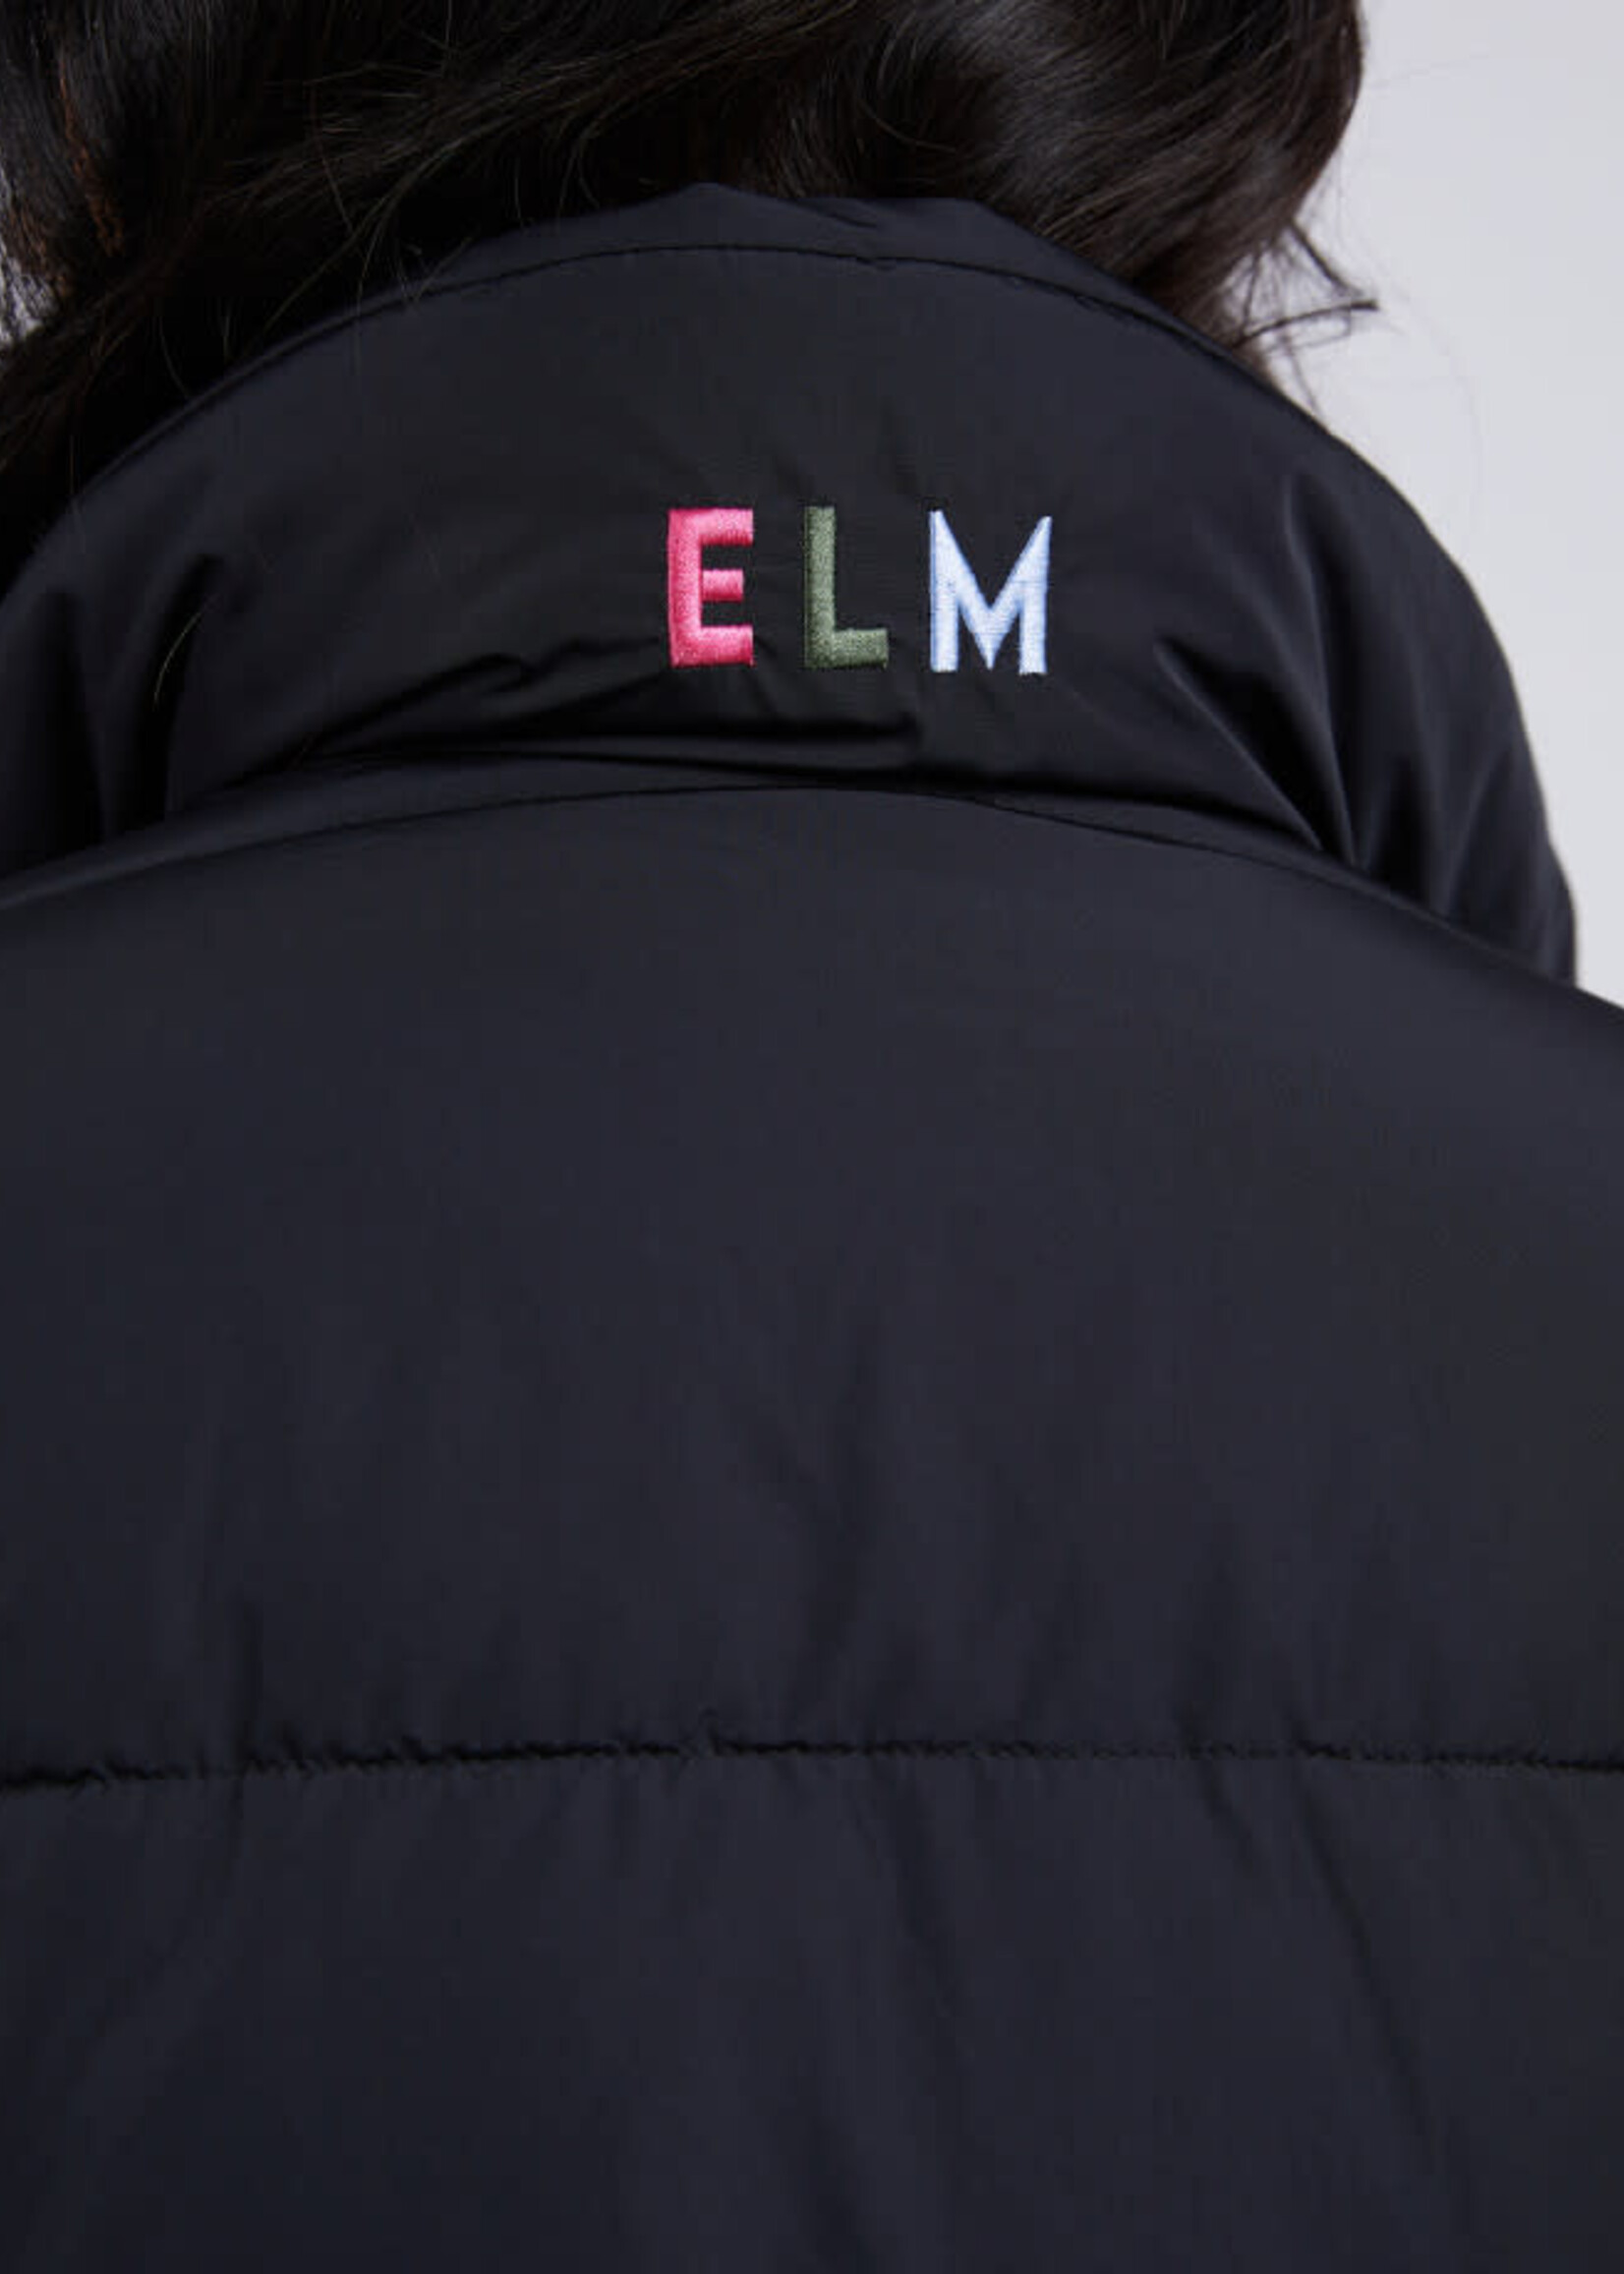 Elm Longline Puffer Jacket